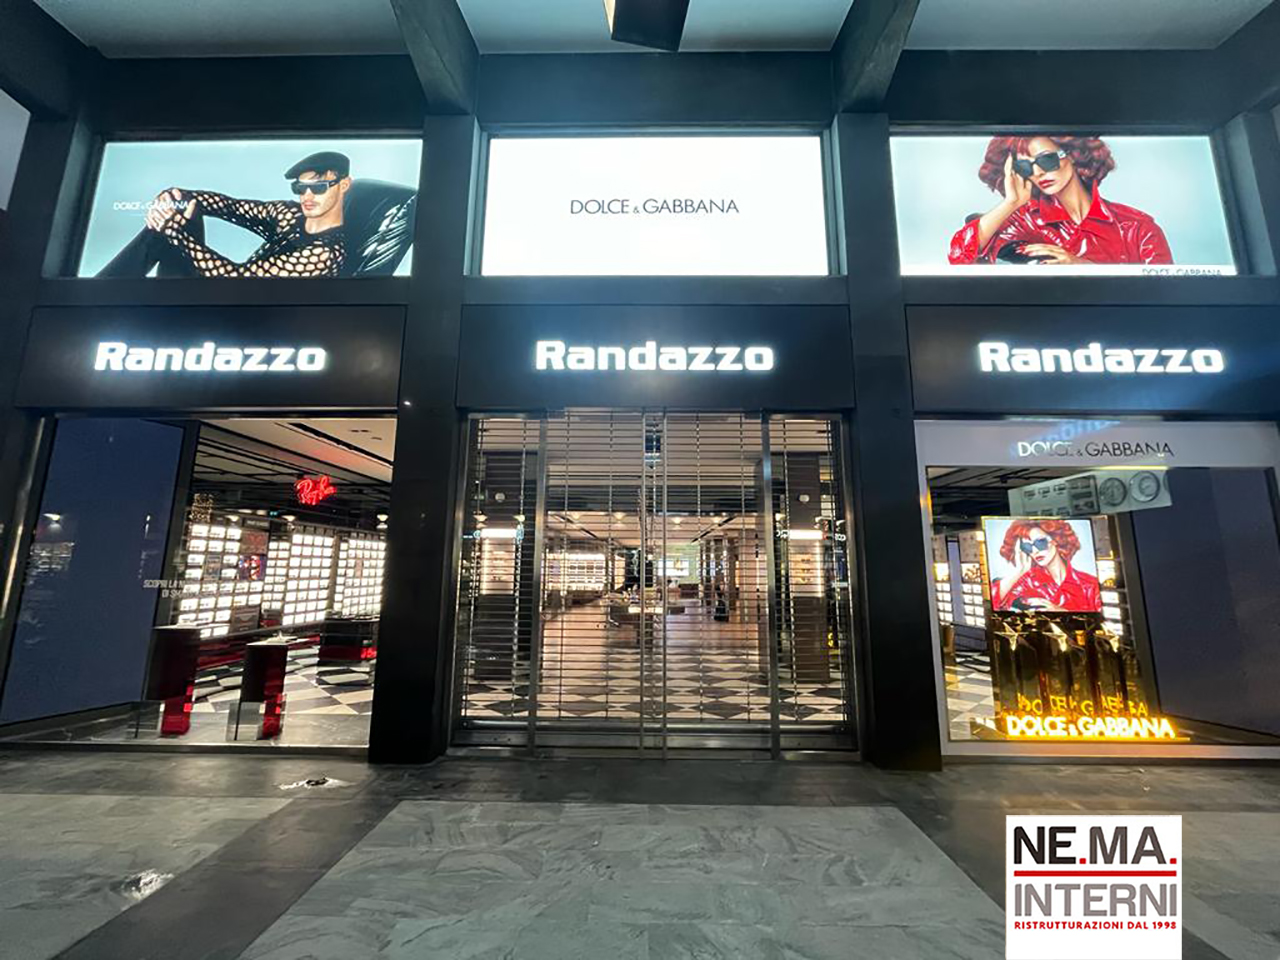 Realizzazione del negozio Salmoiraghi & Viganò nella centralissima Via Ruggiero Settimo a Palermo, ridando vita allo storico marchio RANDAZZO.